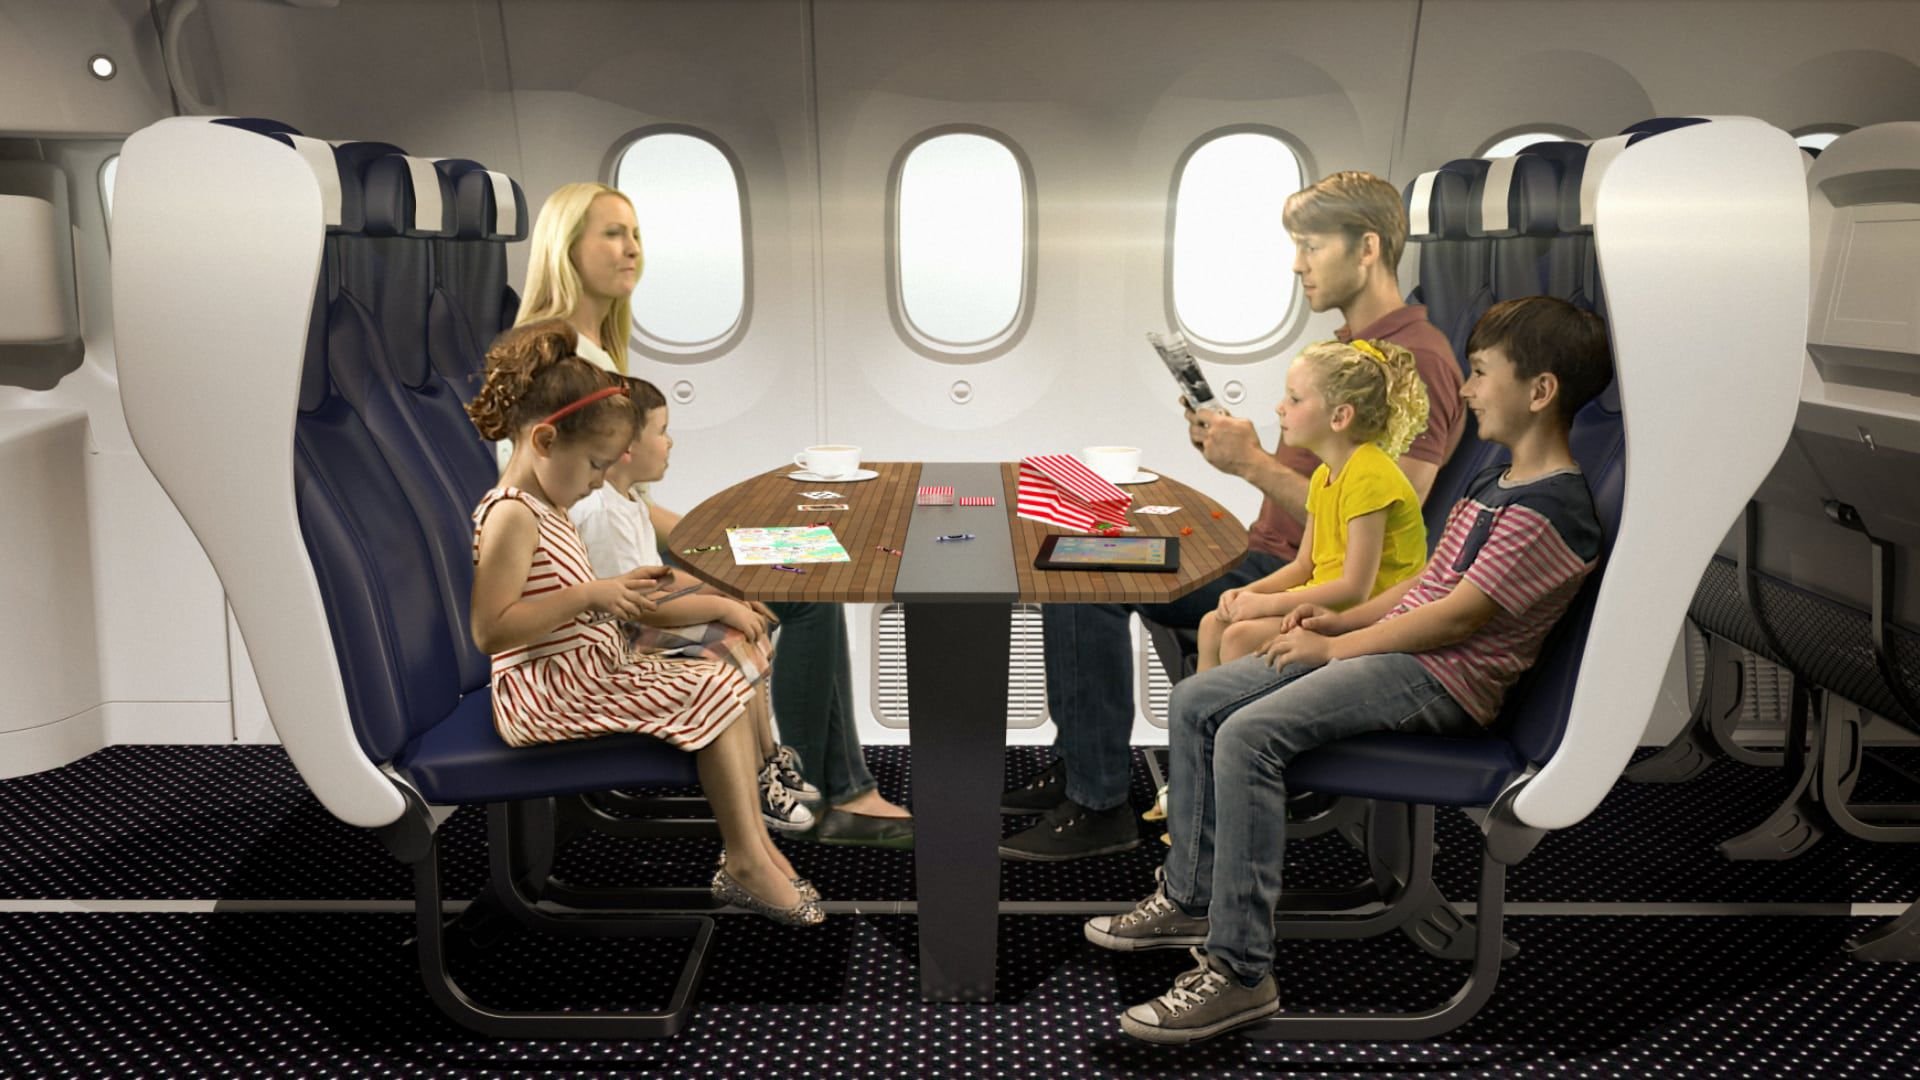 Самолеты для 1 ребенка. Кресло "самолет". Салонтсамолета с пассажипраи. Сиденья в самолете. Салон самолета с пассажирами.